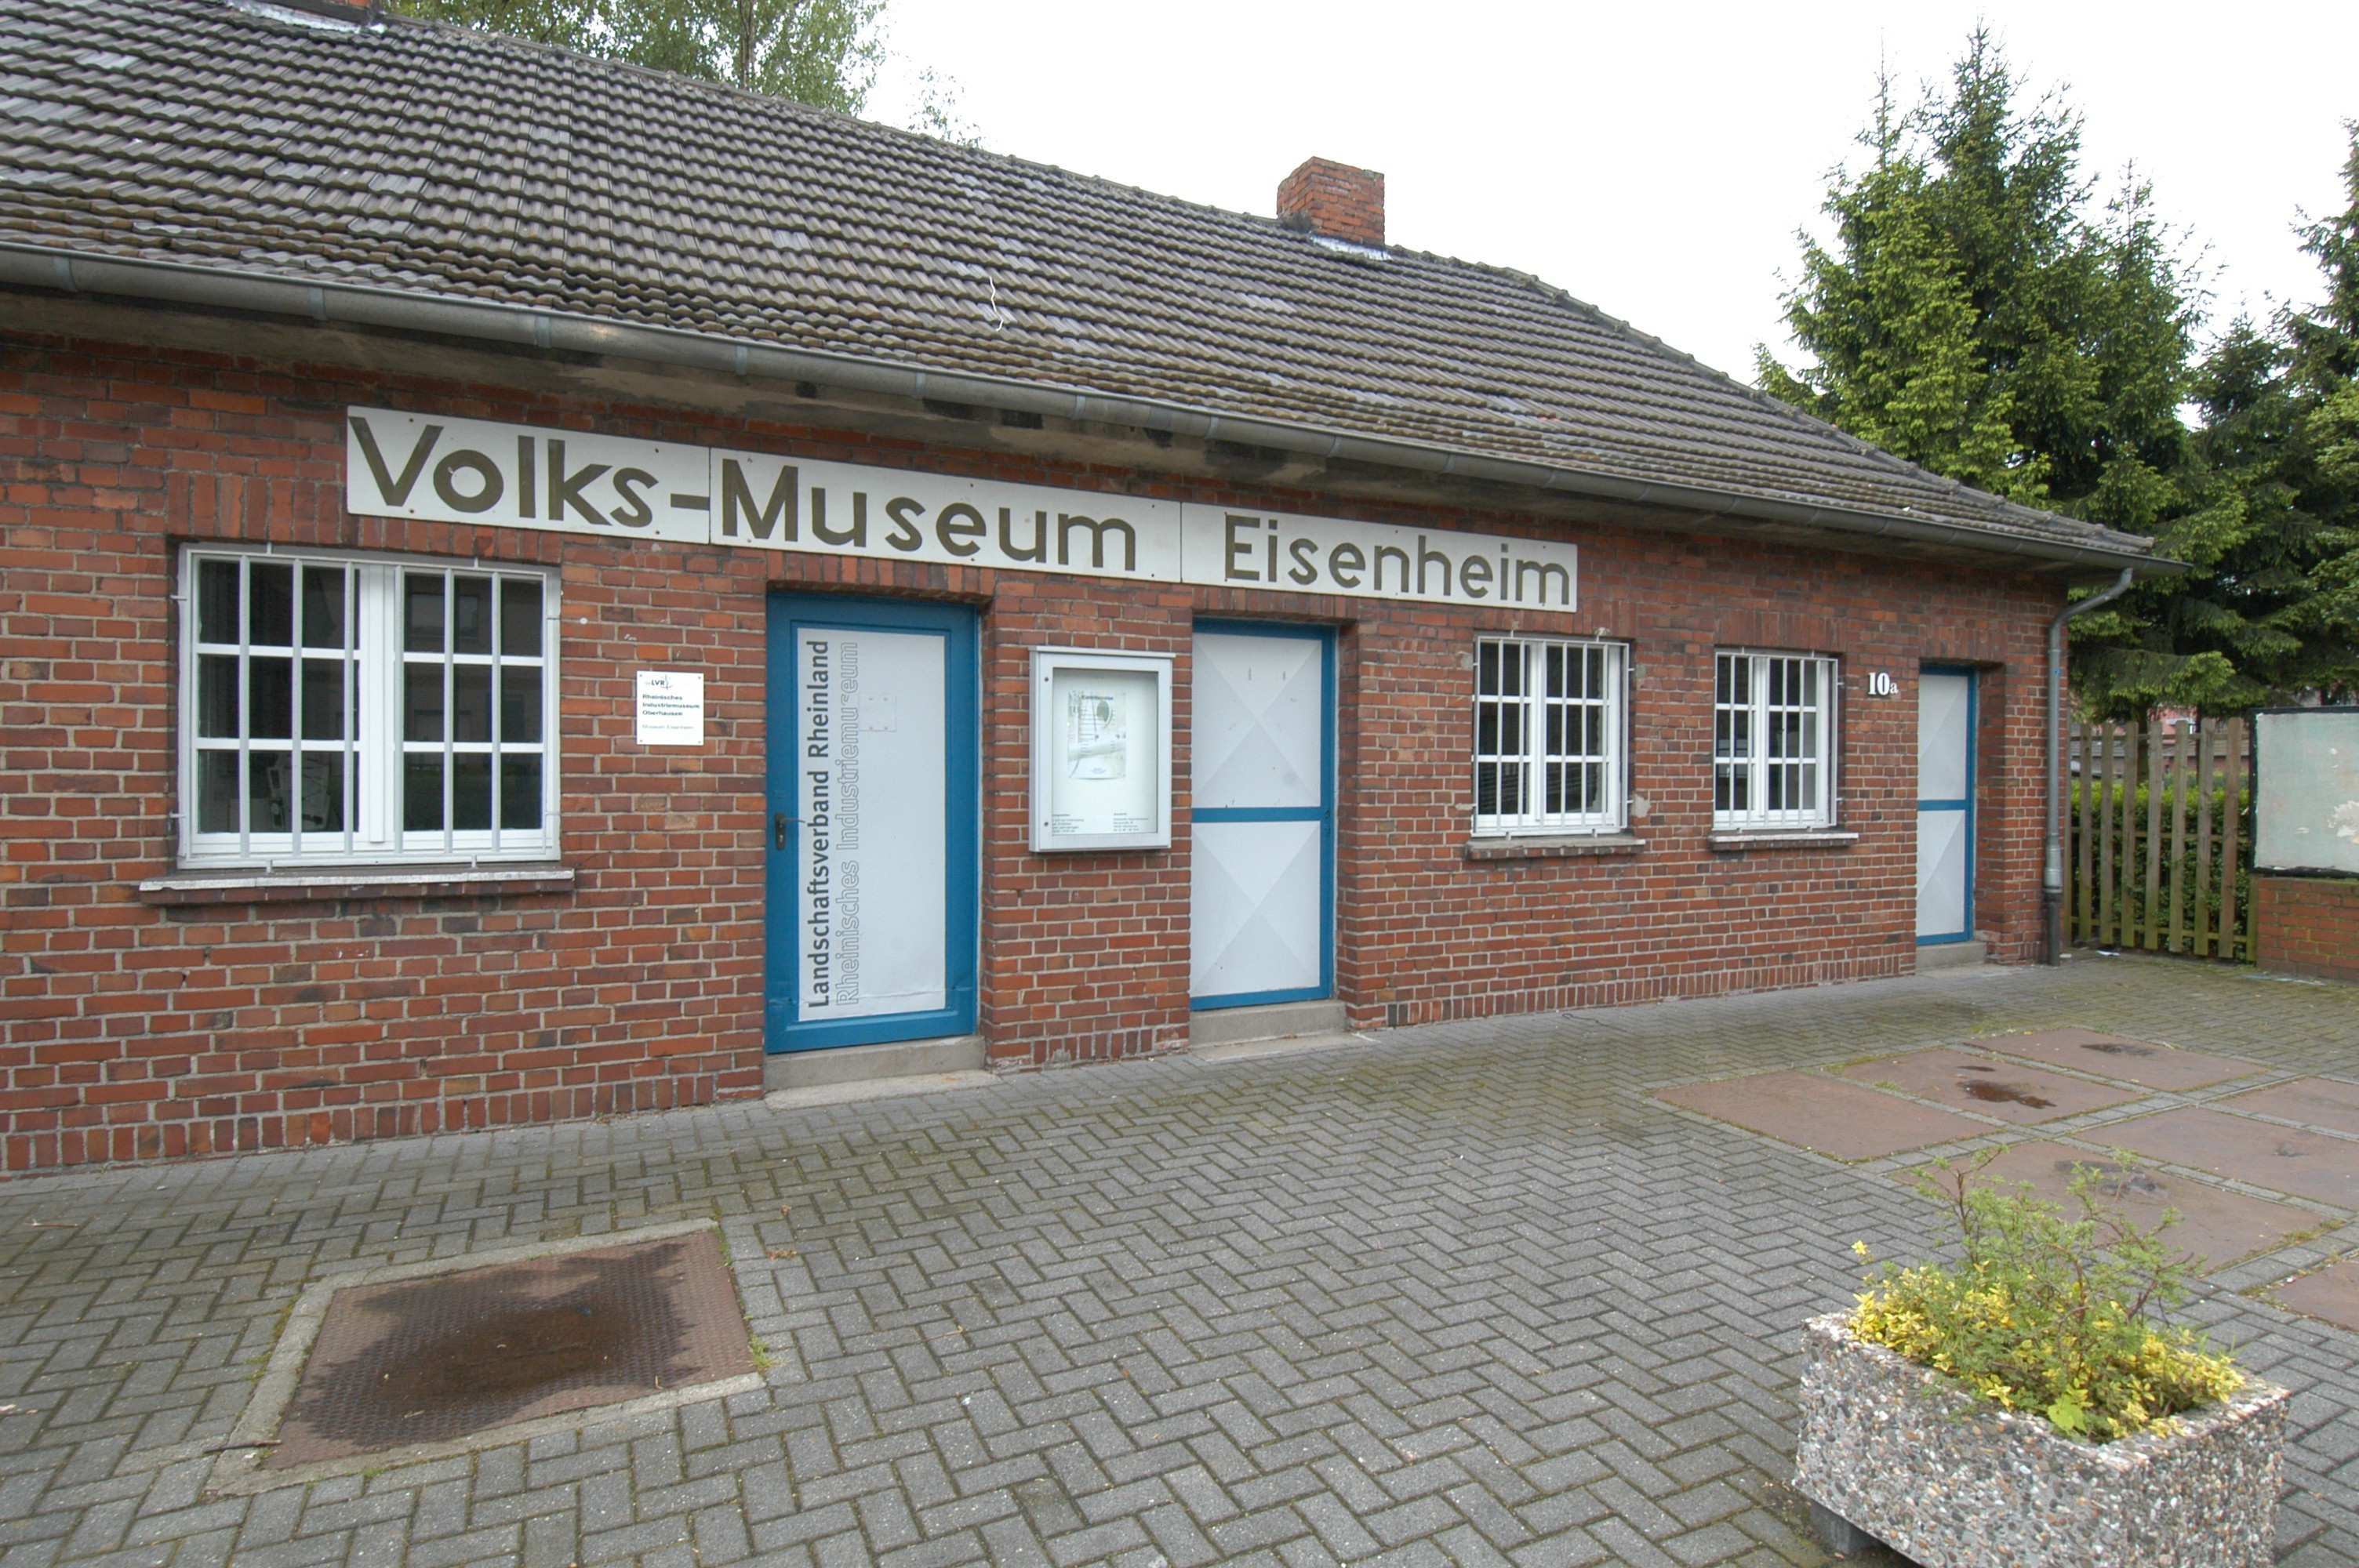 Das Volks-Museum ist der erste Anlaufpunkt für Besucher. Dieses ehemalige Waschhaus richteten die Eisenheimer ursprünglich selbst ein. Nach der Übernahme durch den LVR 1989 ergänzte das Team des LVR-Industriemuseums die Ausstellung und brachte sie auf den neusten wissenschaftlichen Stand.